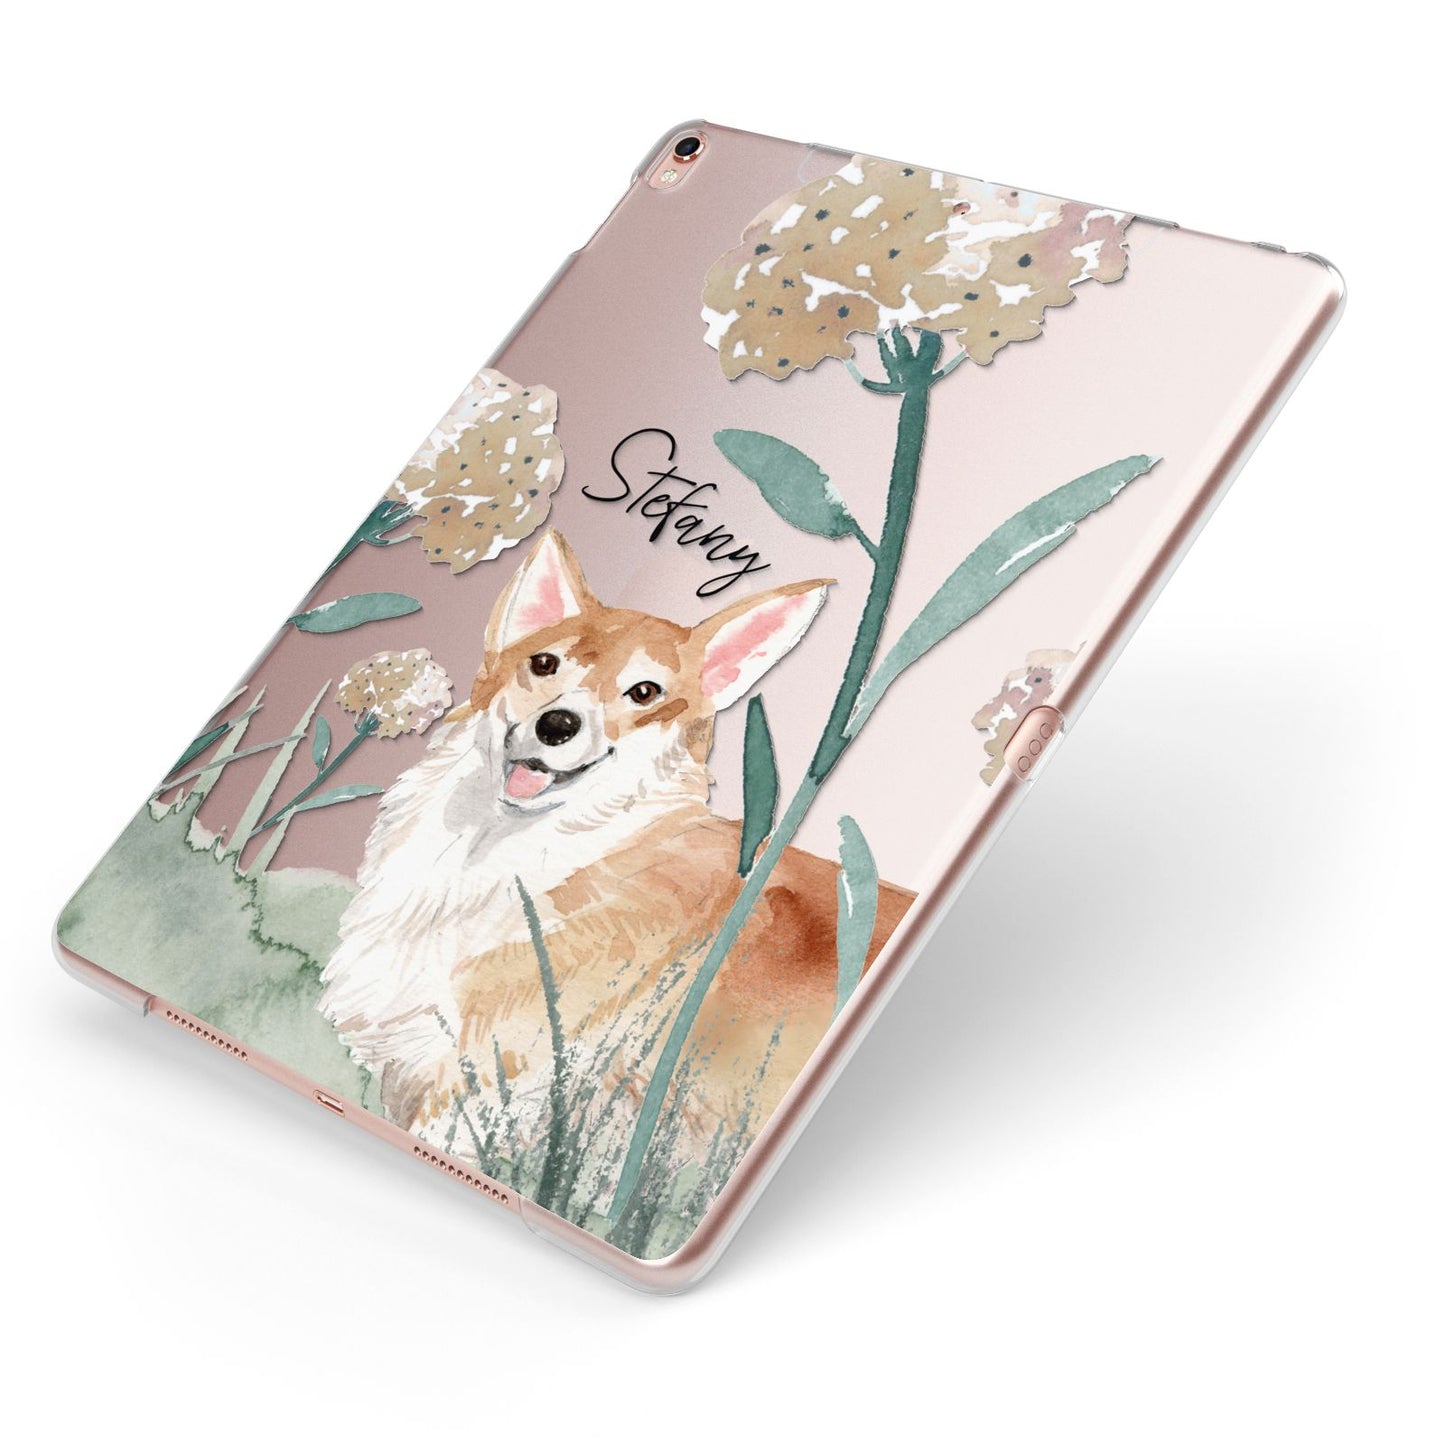 Personalised Welsh Corgi Dog Apple iPad Case on Rose Gold iPad Side View